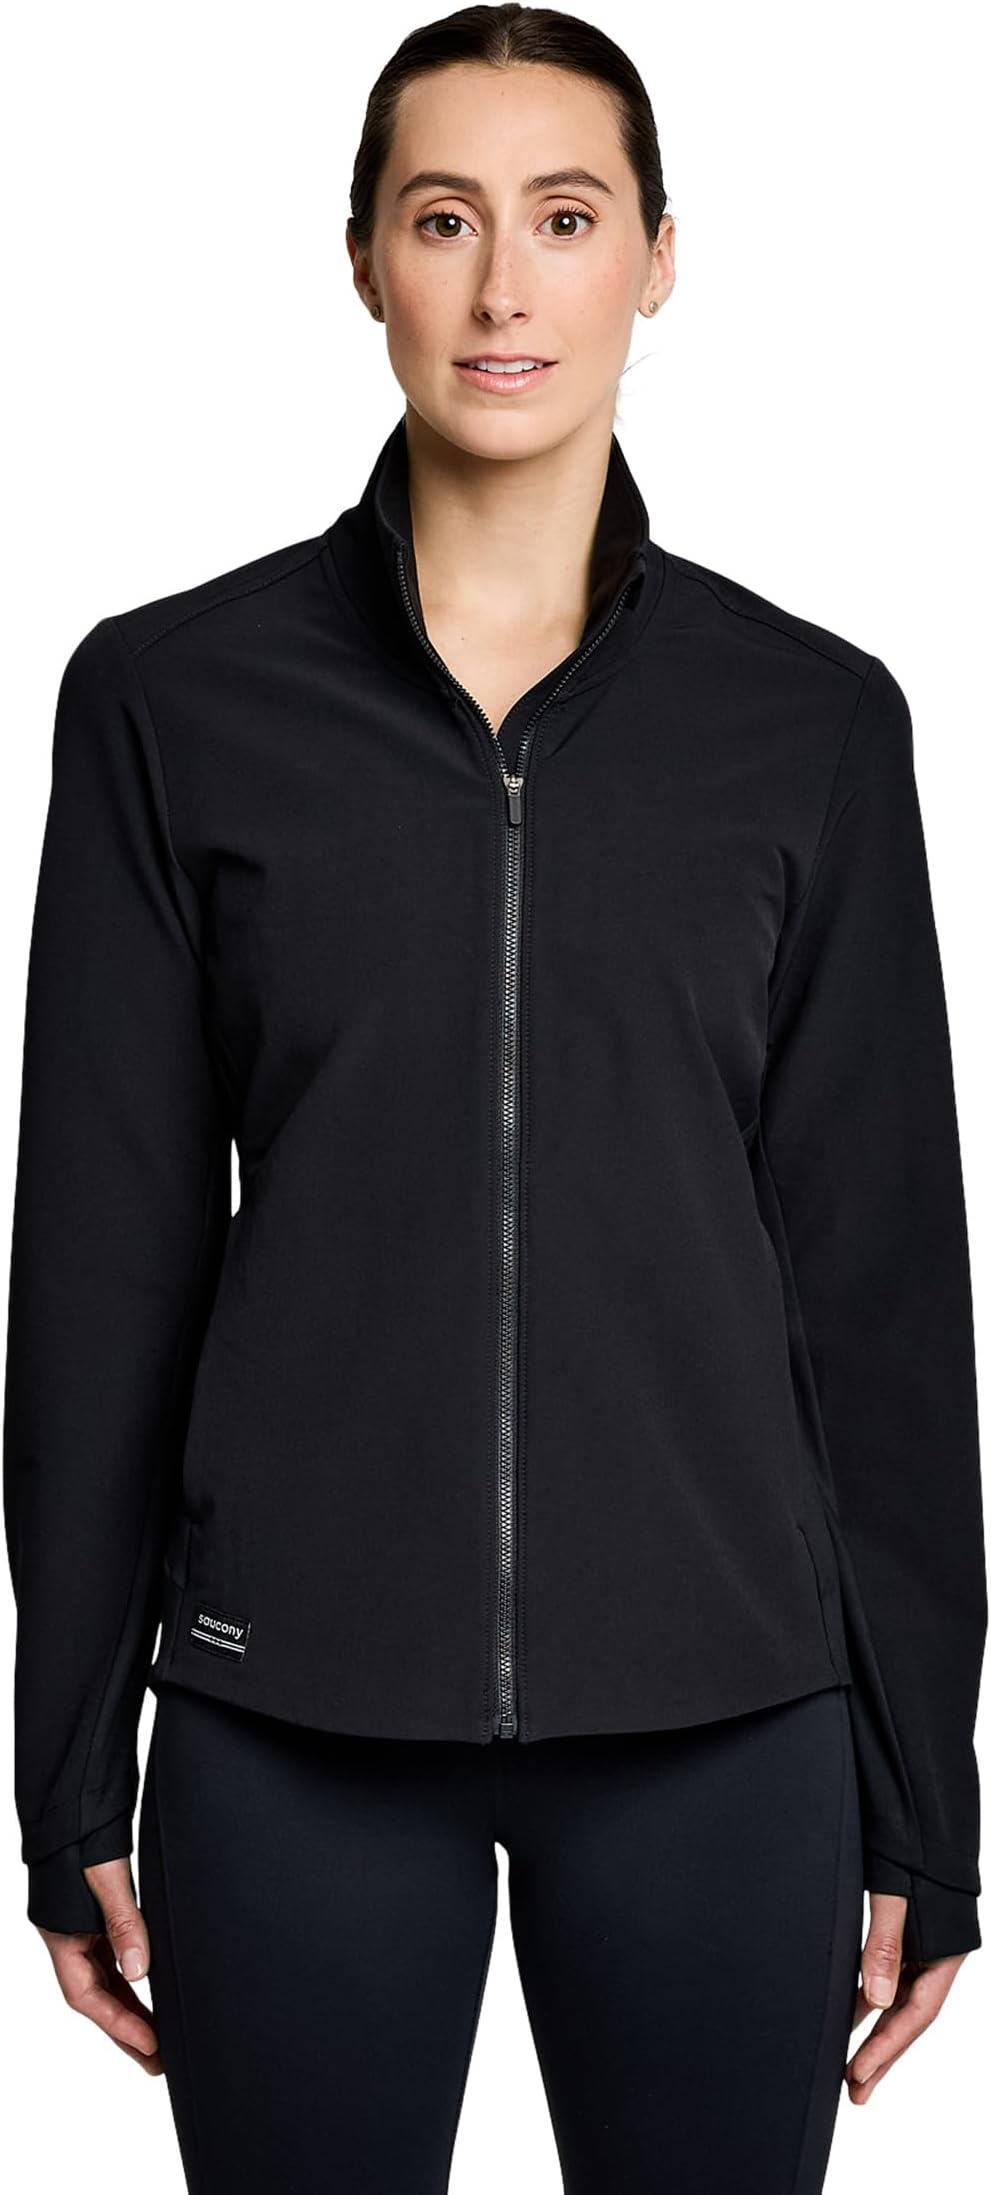 Куртка Triumph Jacket Saucony, черный куртка saucony triumph jacket цвет umbra